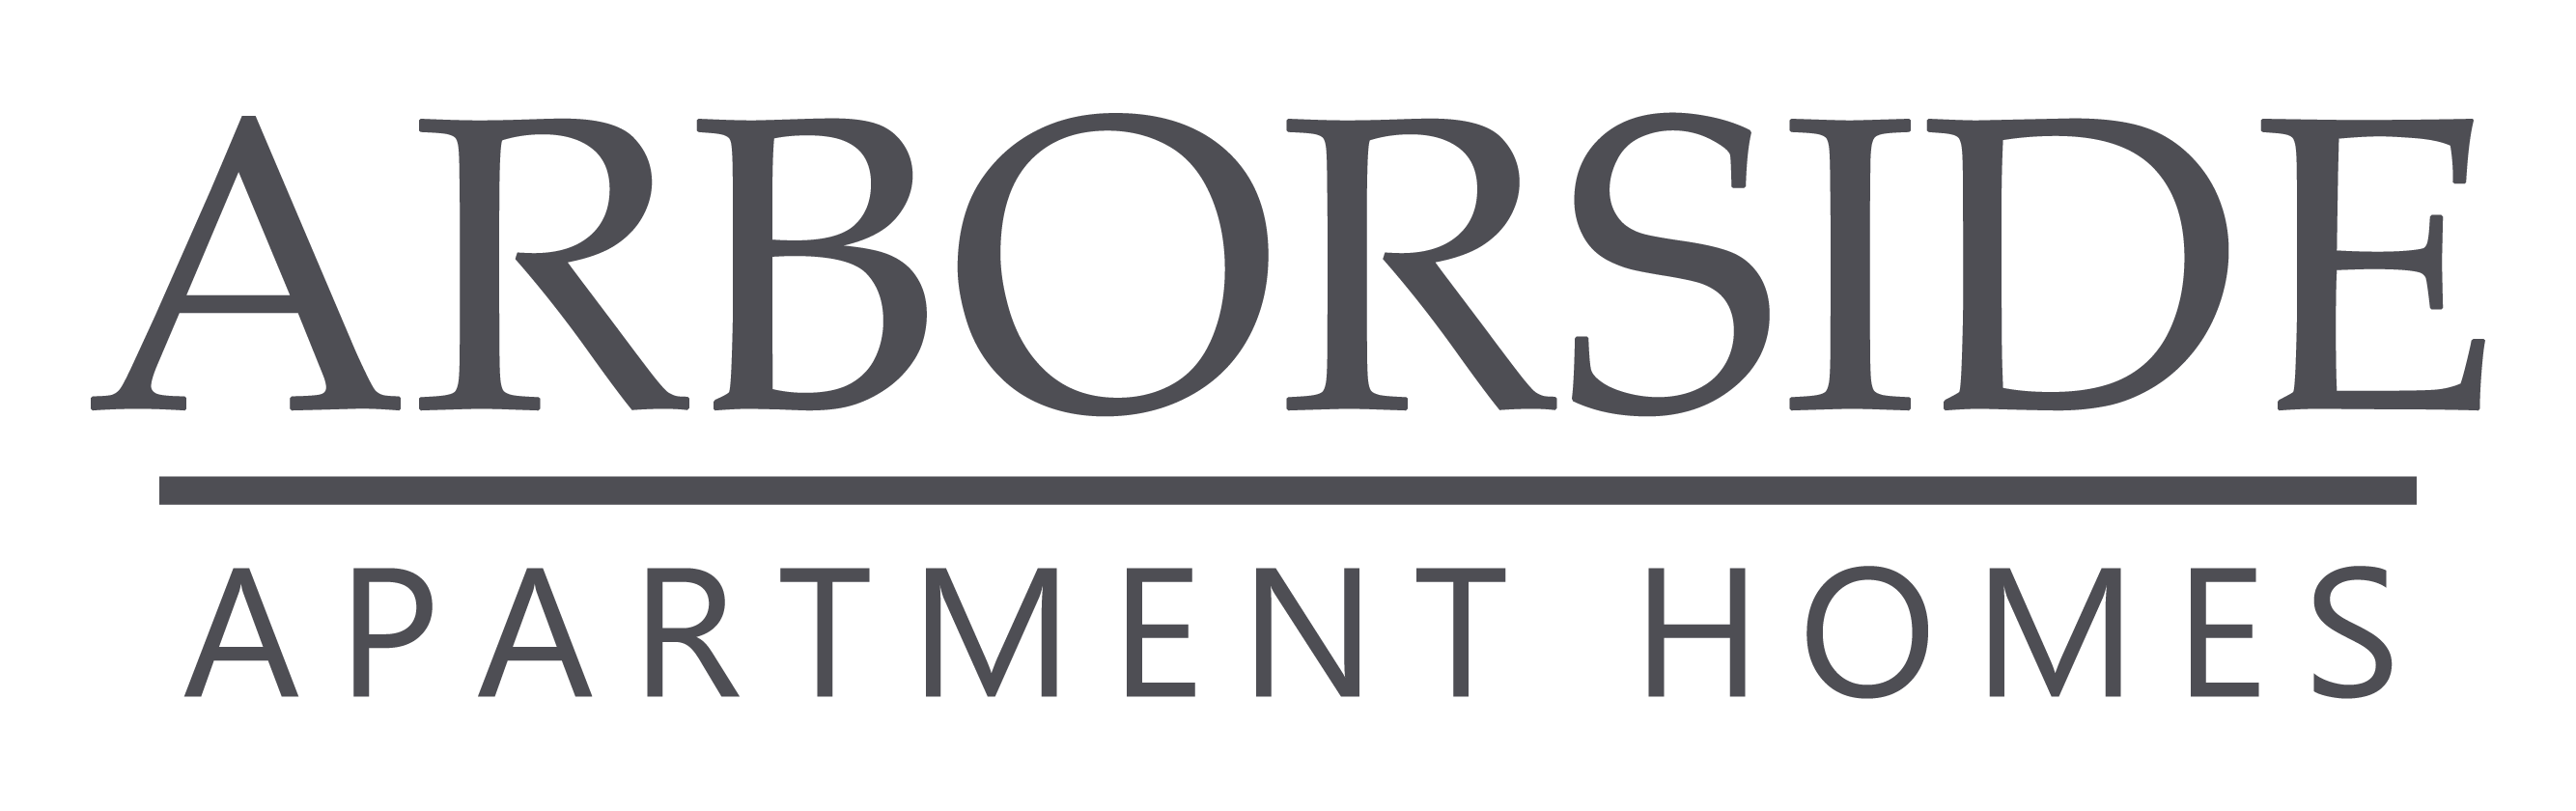 logo Arborside apartment